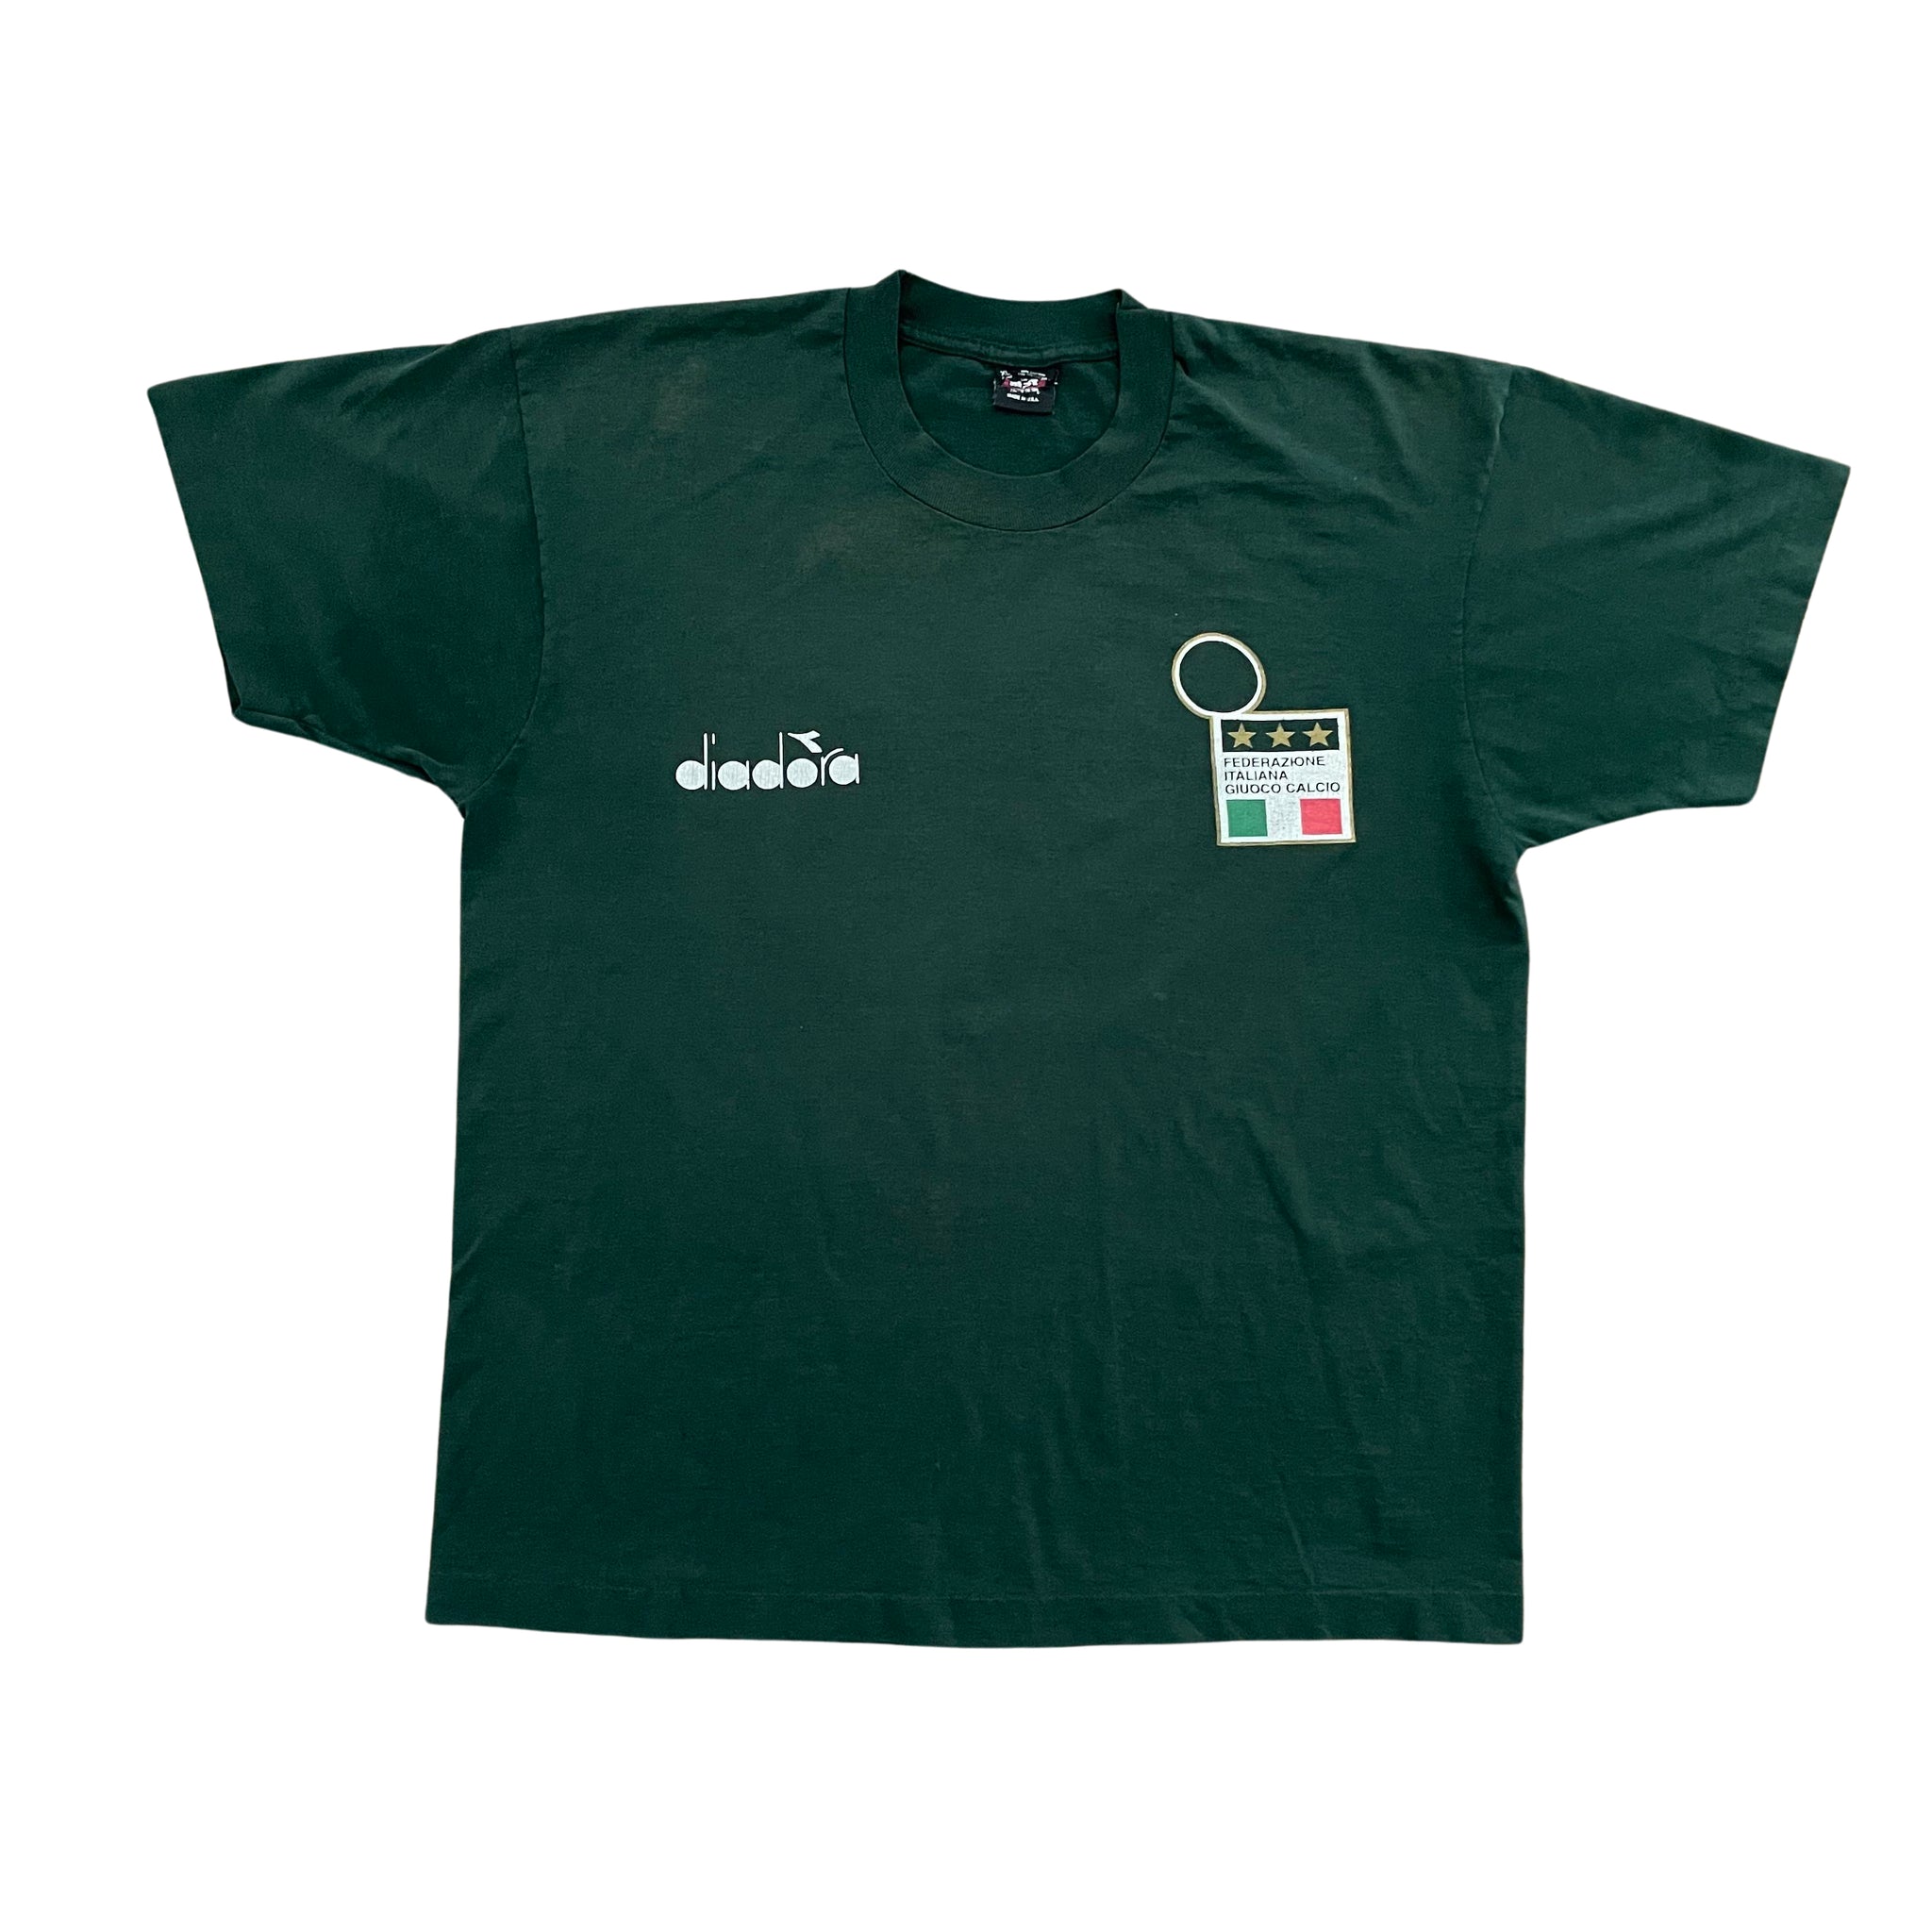 Diadora Roberto Baggio T-Shirt - XL